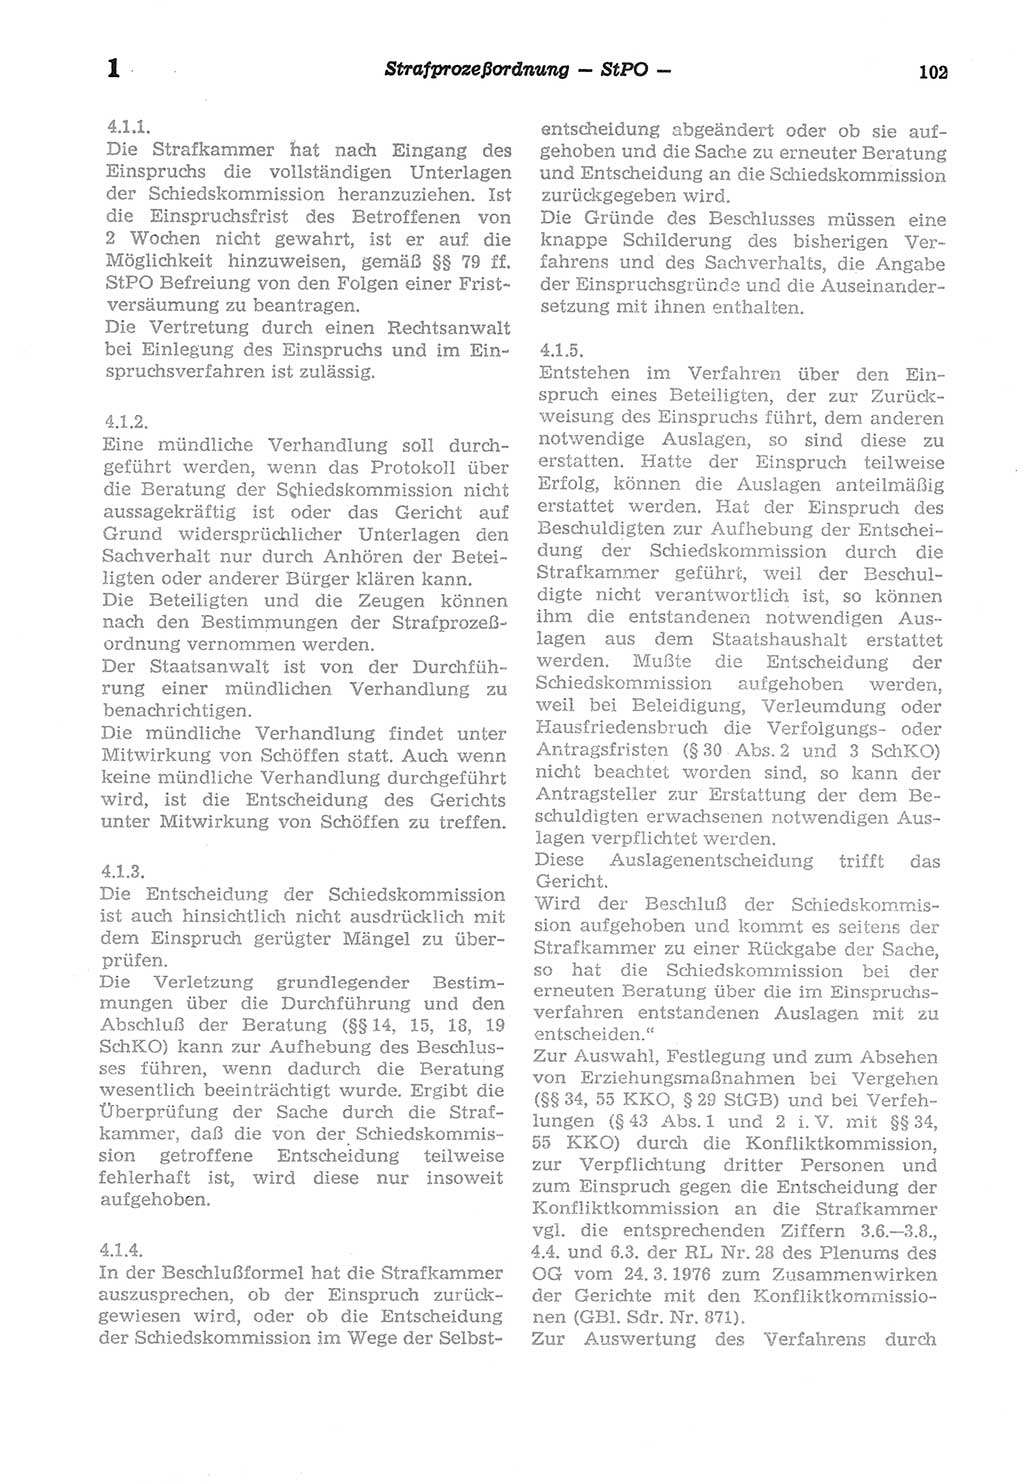 Strafprozeßordnung (StPO) der Deutschen Demokratischen Republik (DDR) sowie angrenzende Gesetze und Bestimmungen 1977, Seite 102 (StPO DDR Ges. Best. 1977, S. 102)